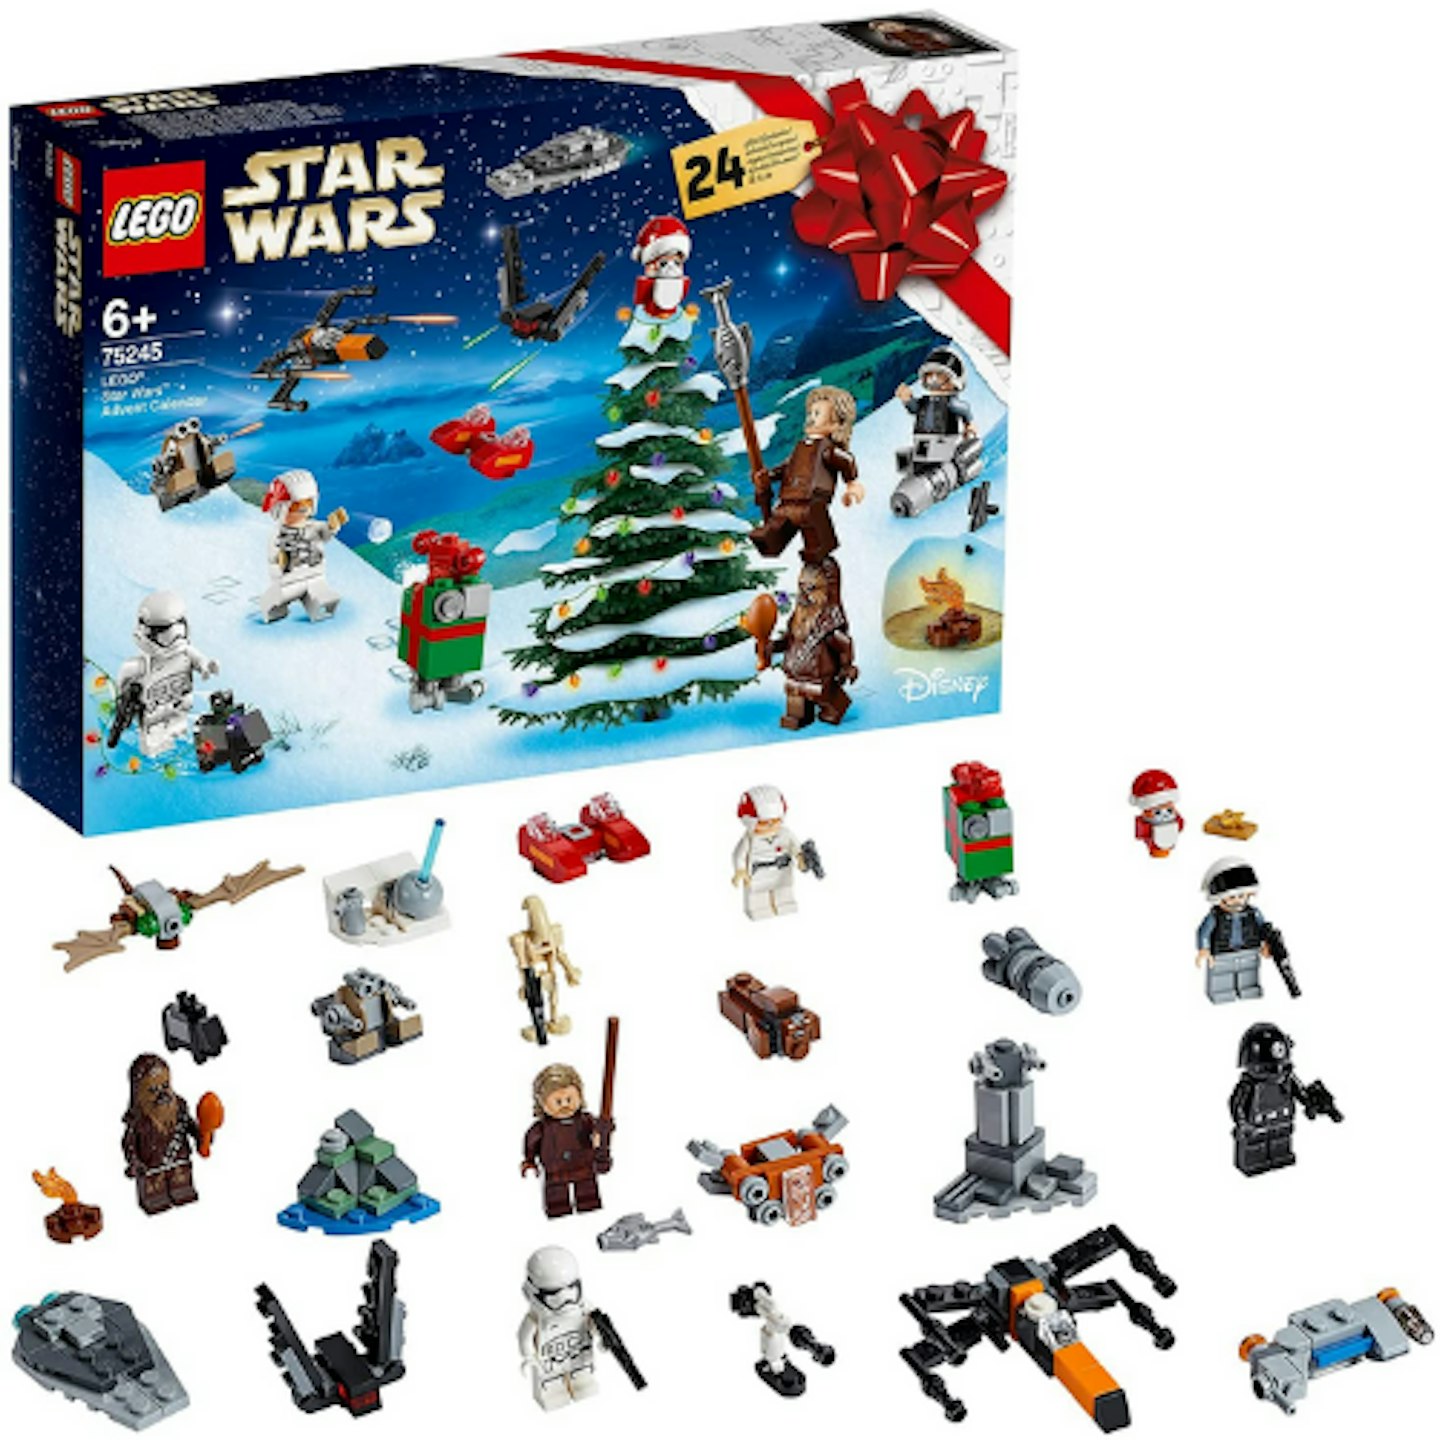 LEGO 75245 Star Wars Advent Calendar